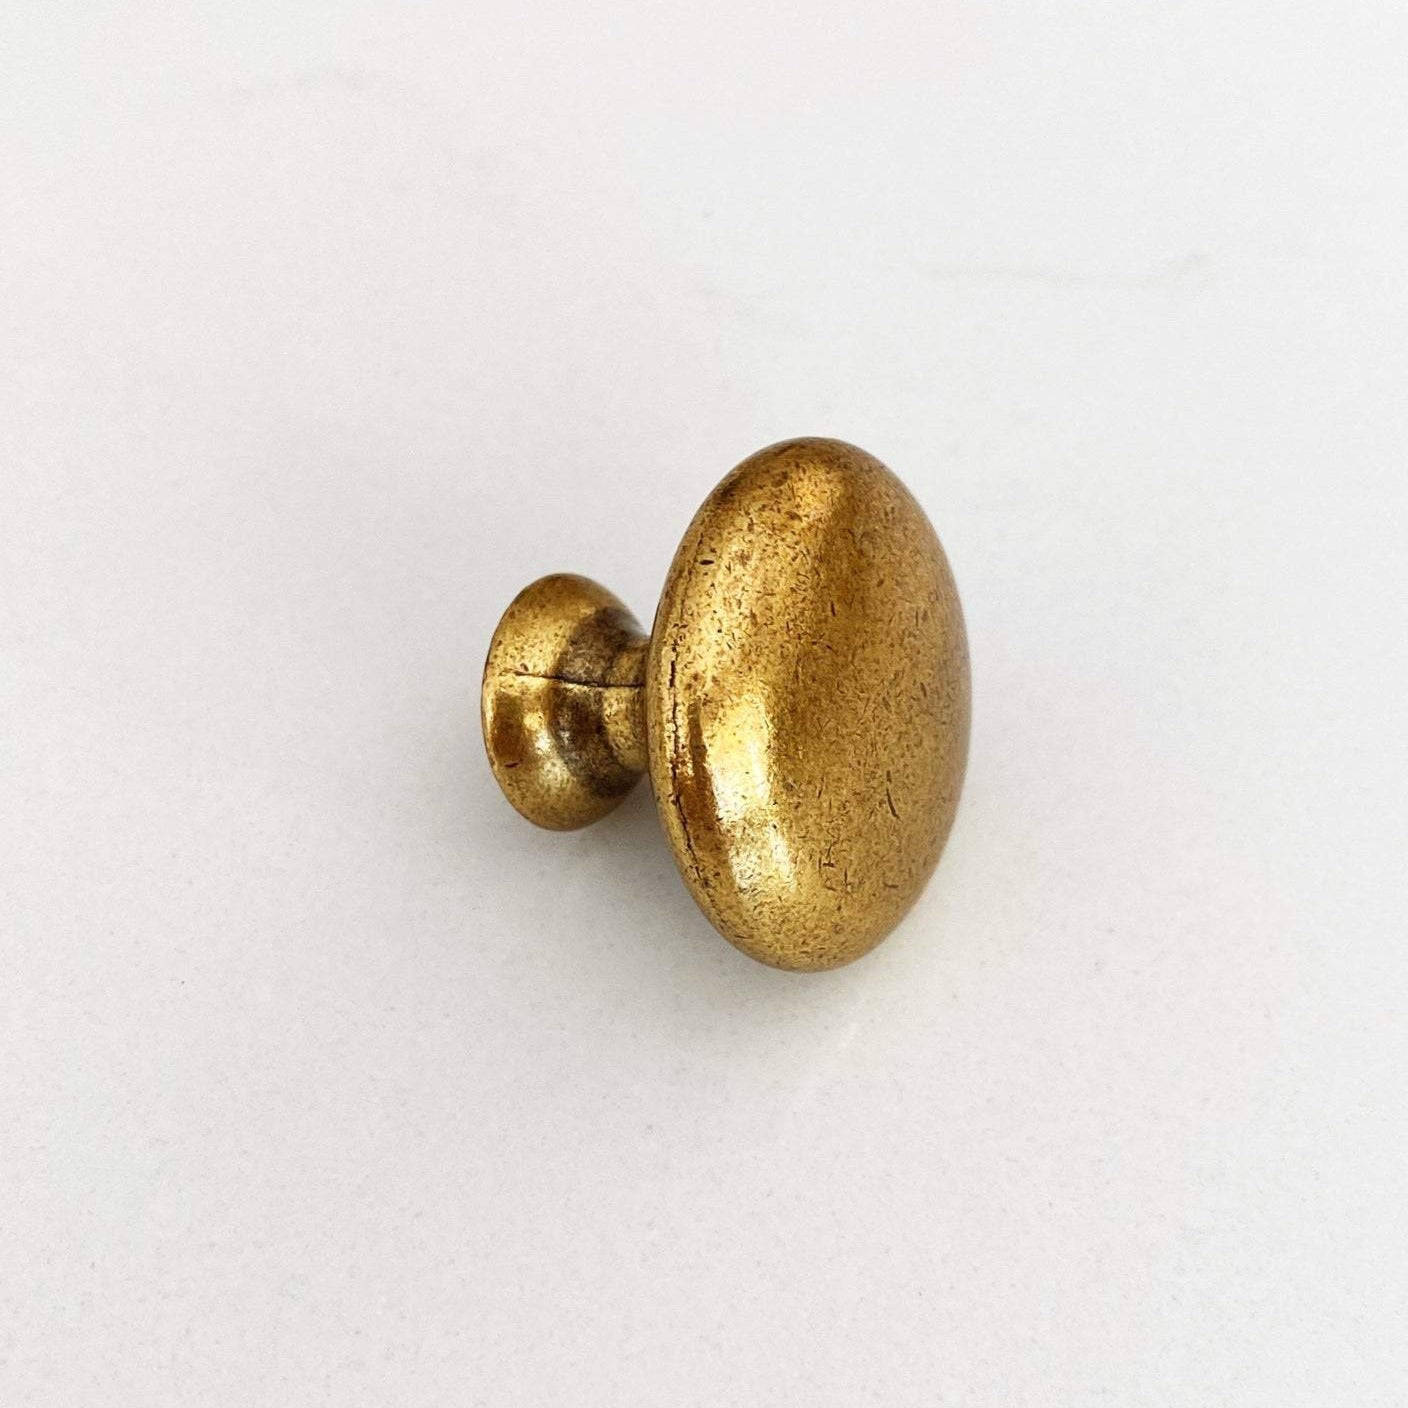 Antique Brass "Capri" Round Cabinet Knob | Pulls